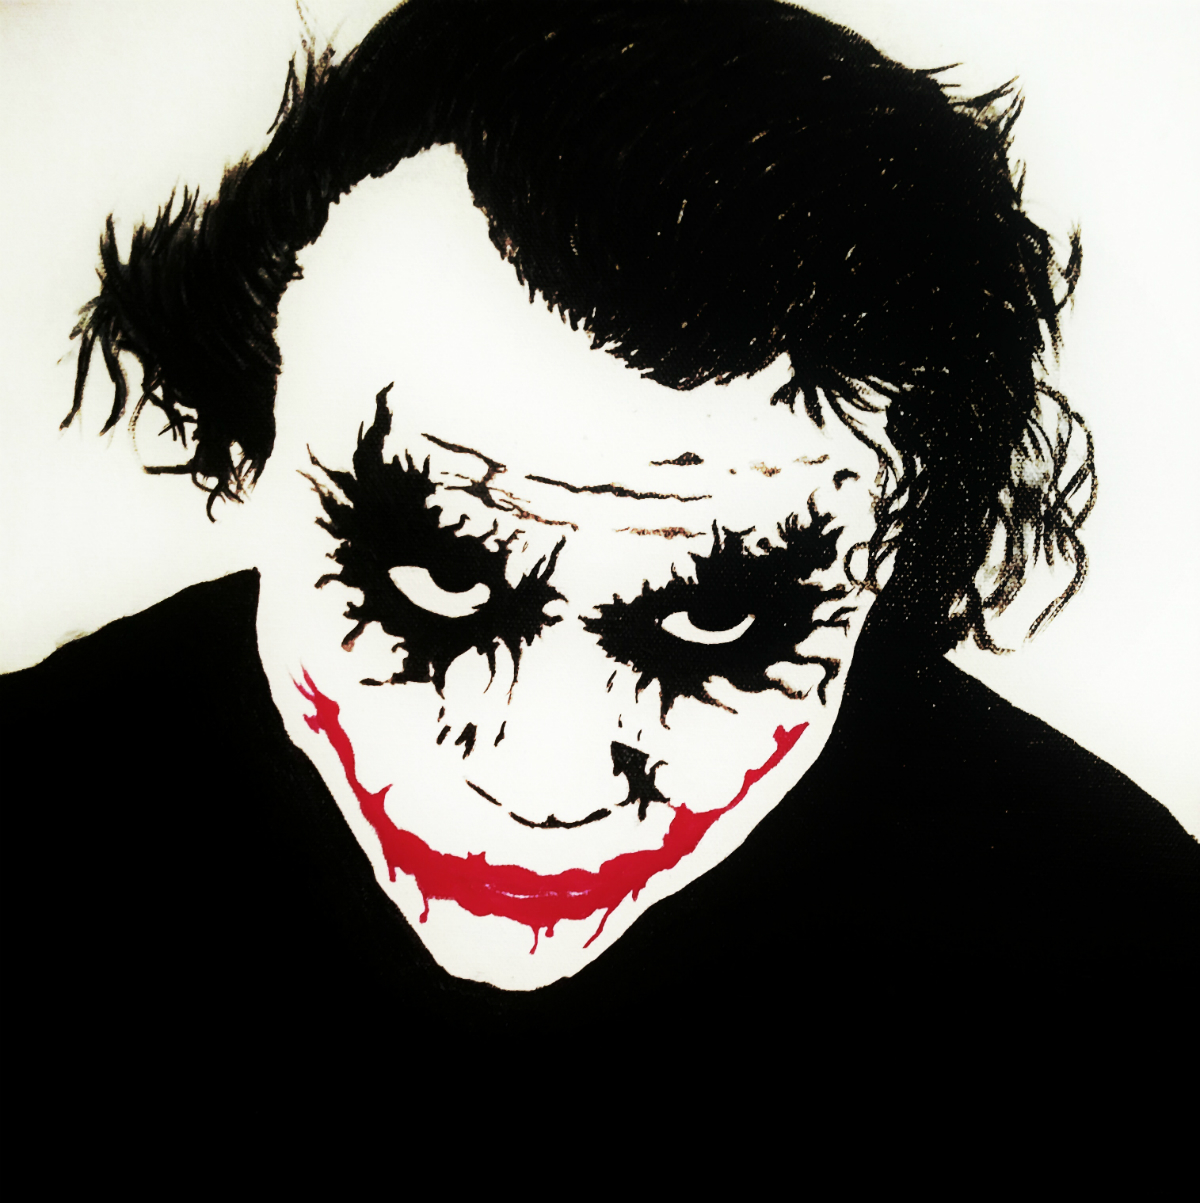 Joker – Heath Ledger